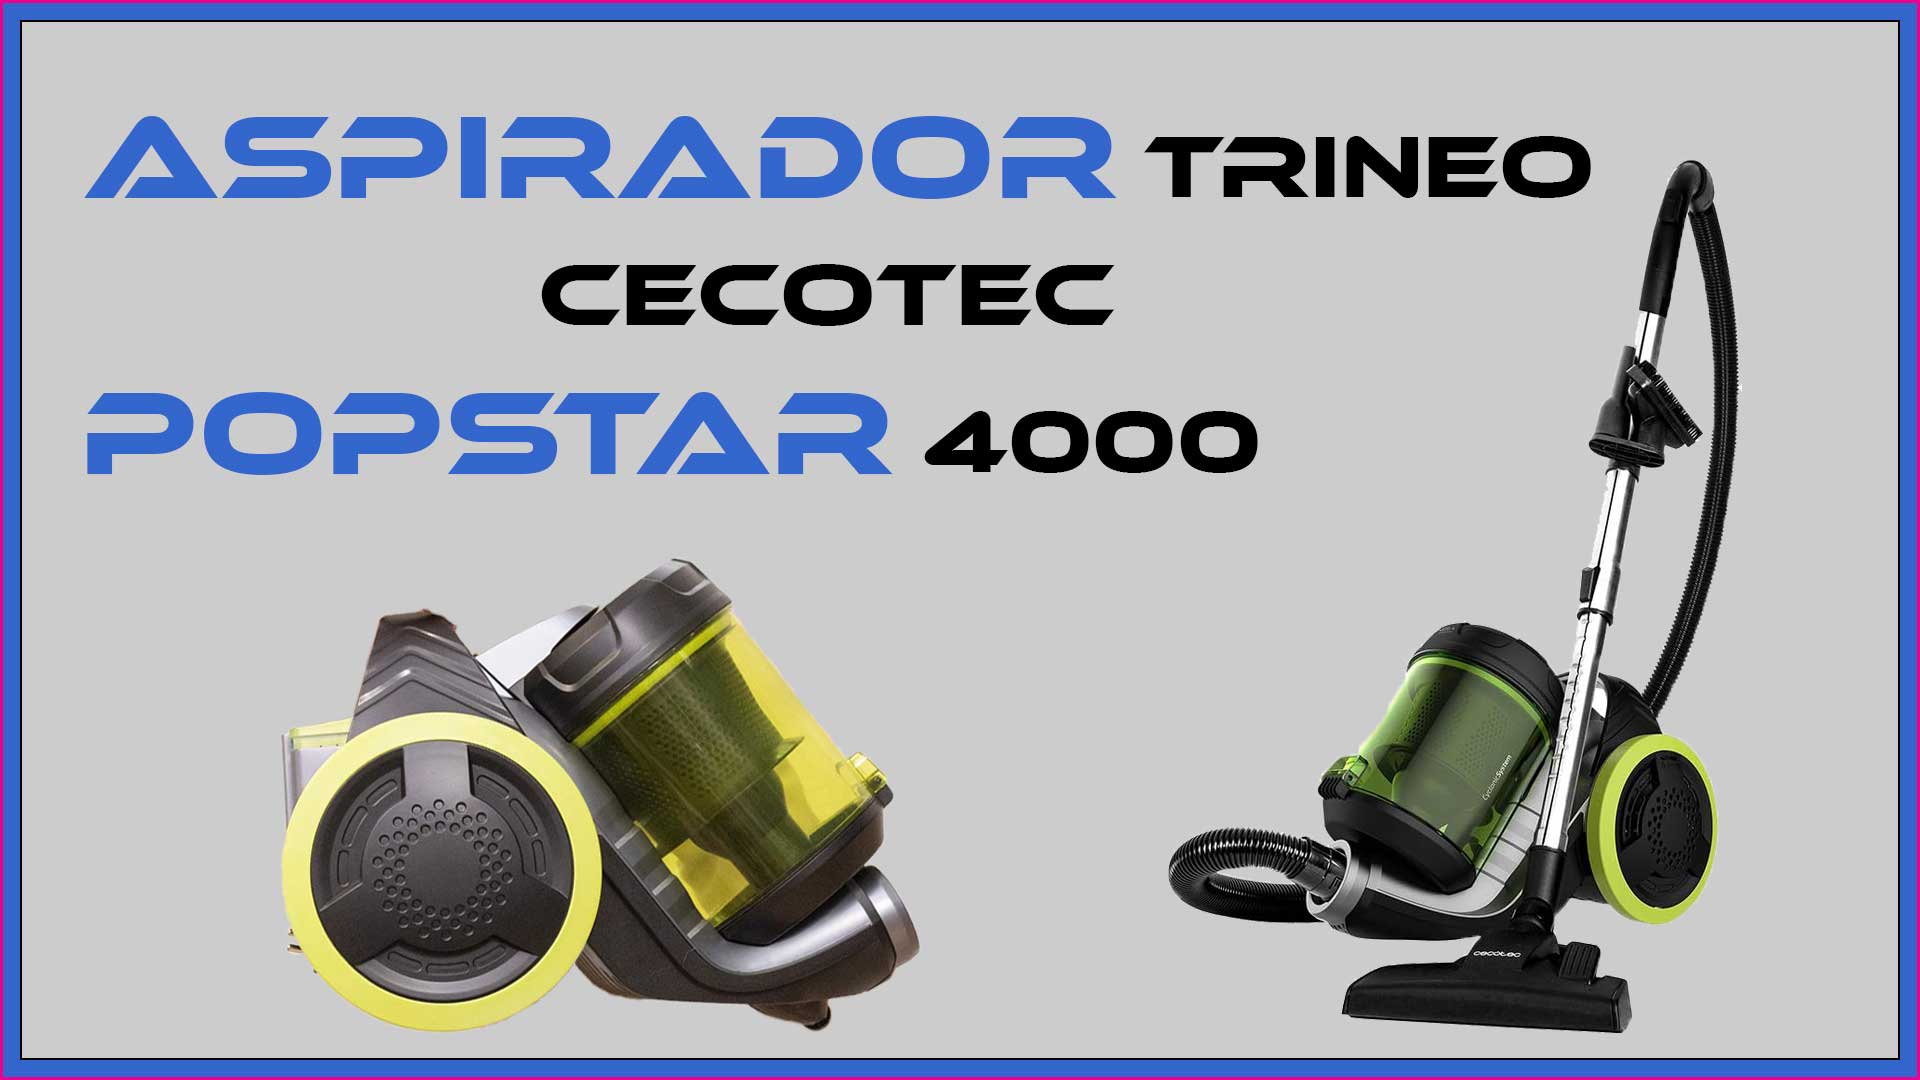 Imagen principal del artículo de la reseña sobre la aspiradora de trineo Cecotec Conga Popstar 4000